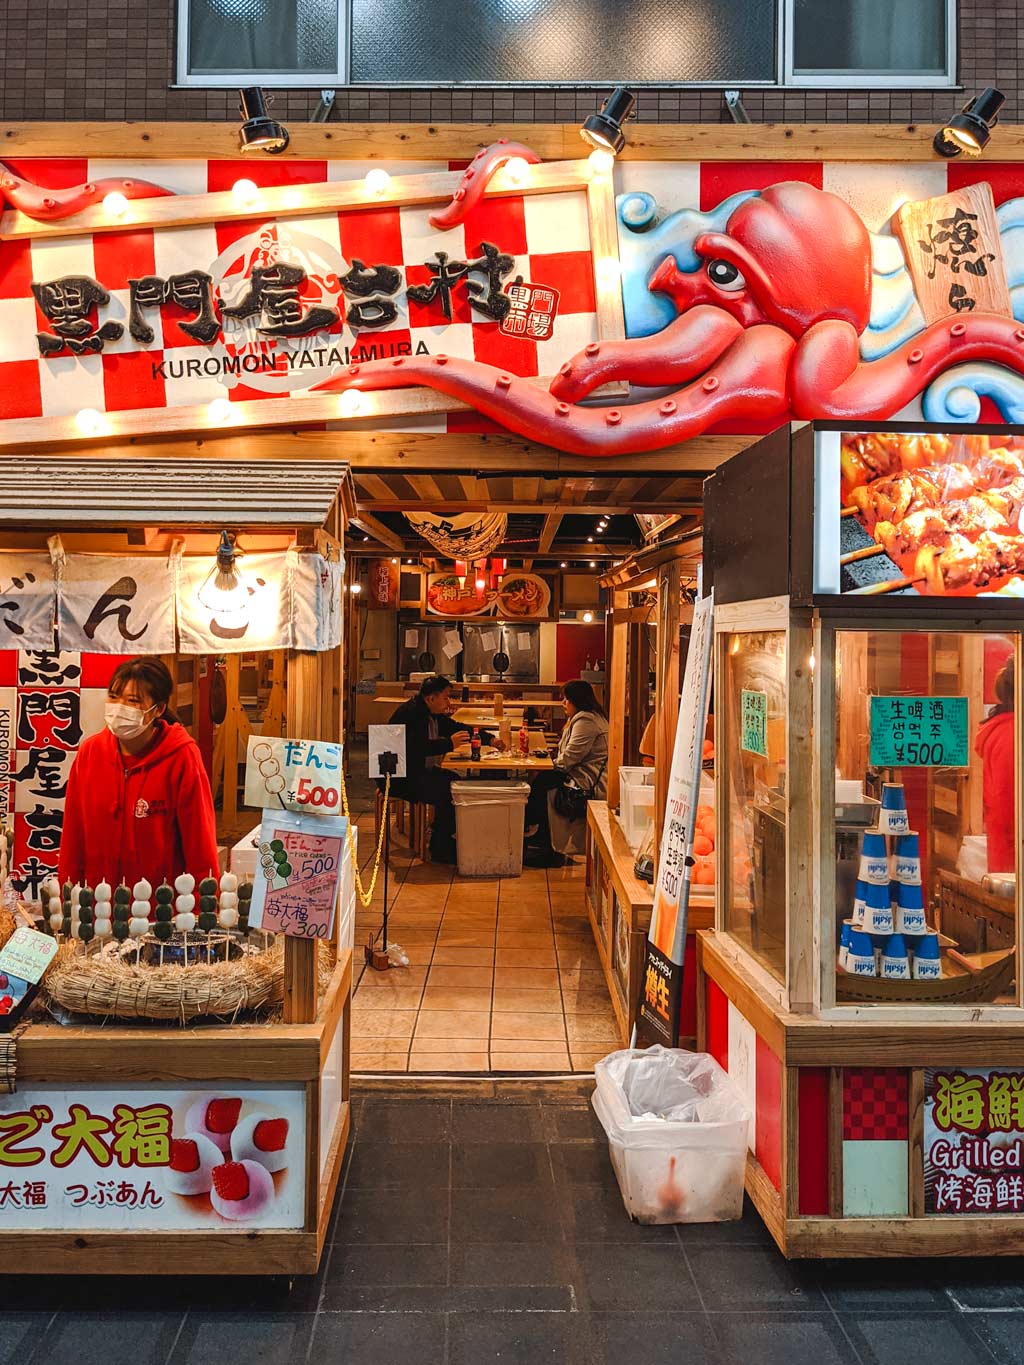 Exterior of takoyaki storefront in Kuromon Market with large cartoon octopus on top.